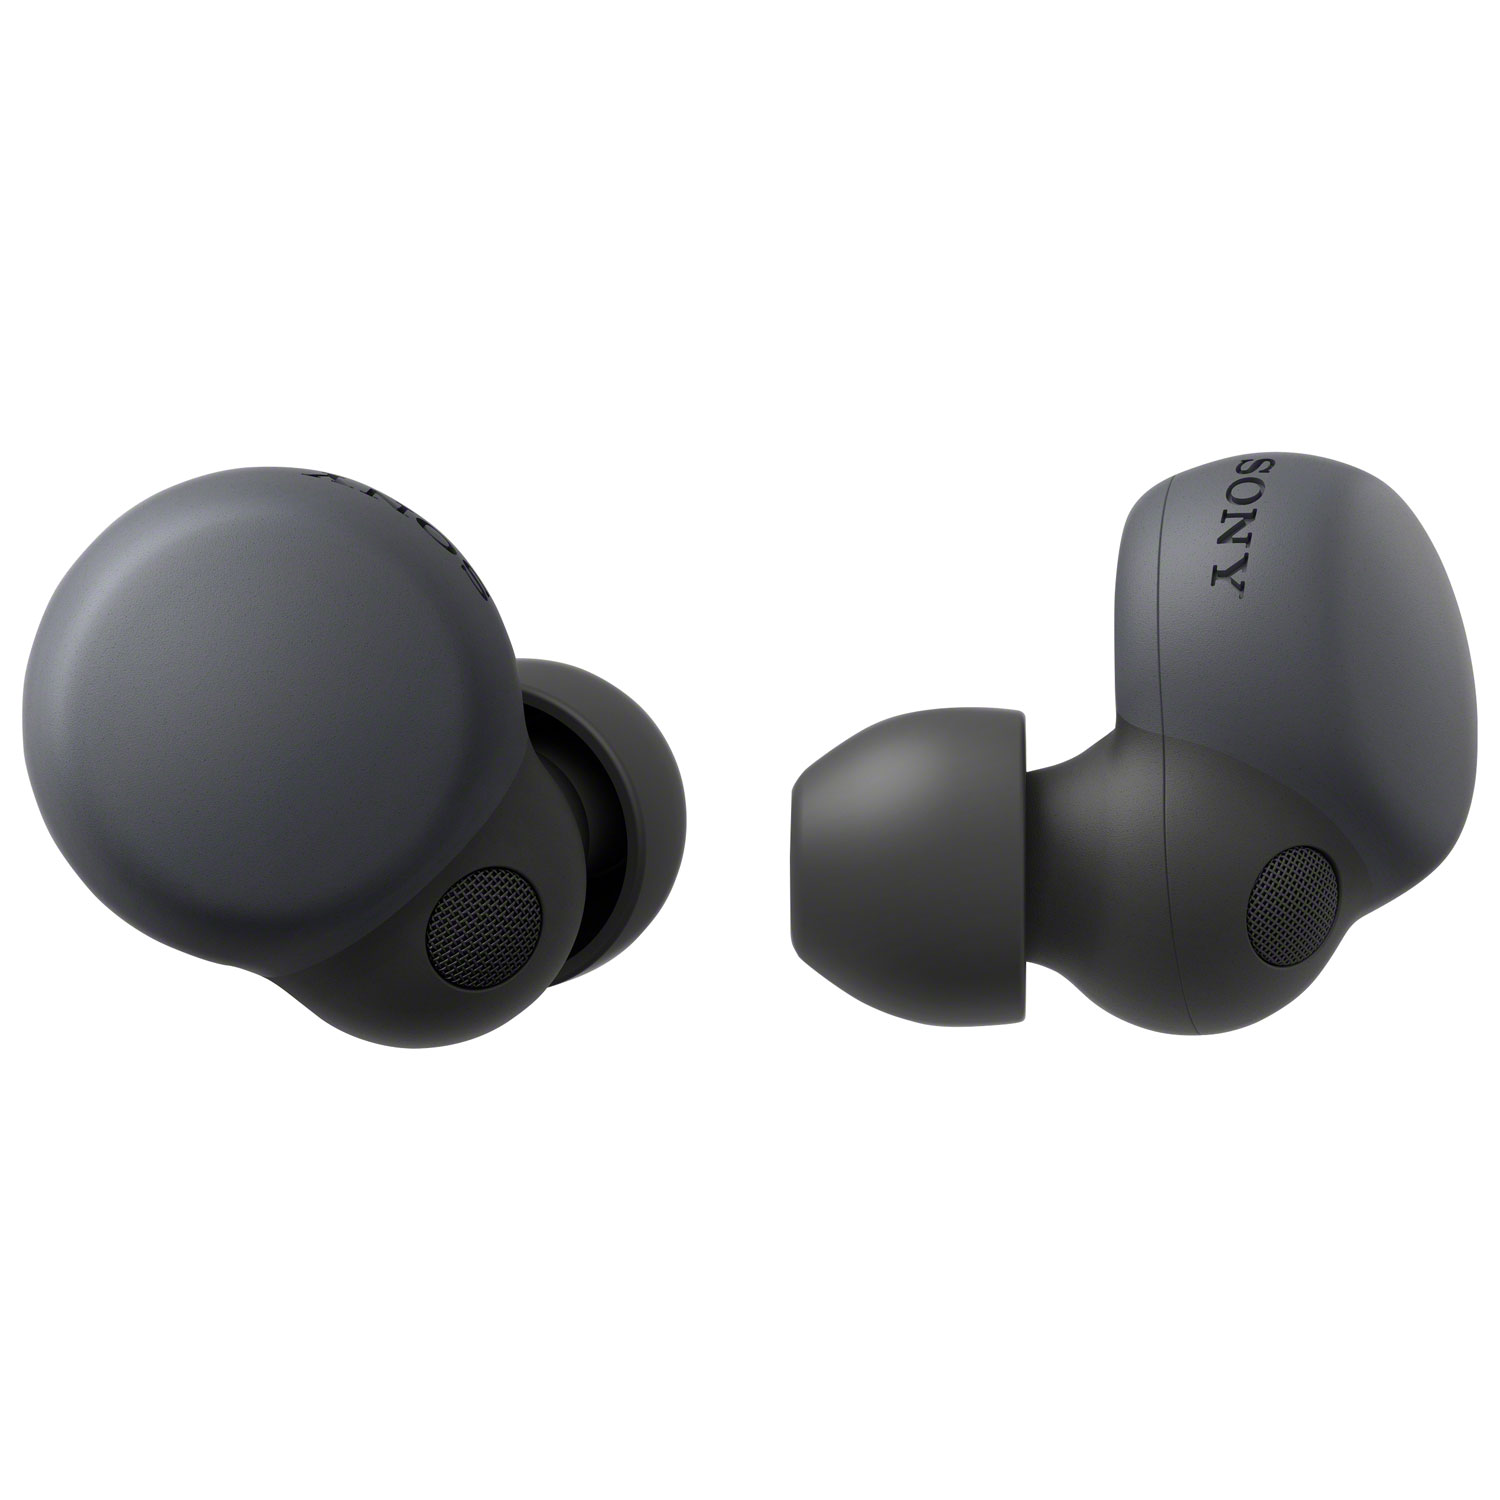 Sony LinkBuds S In-Ear Noise Cancelling True Wireless Earbuds - Black